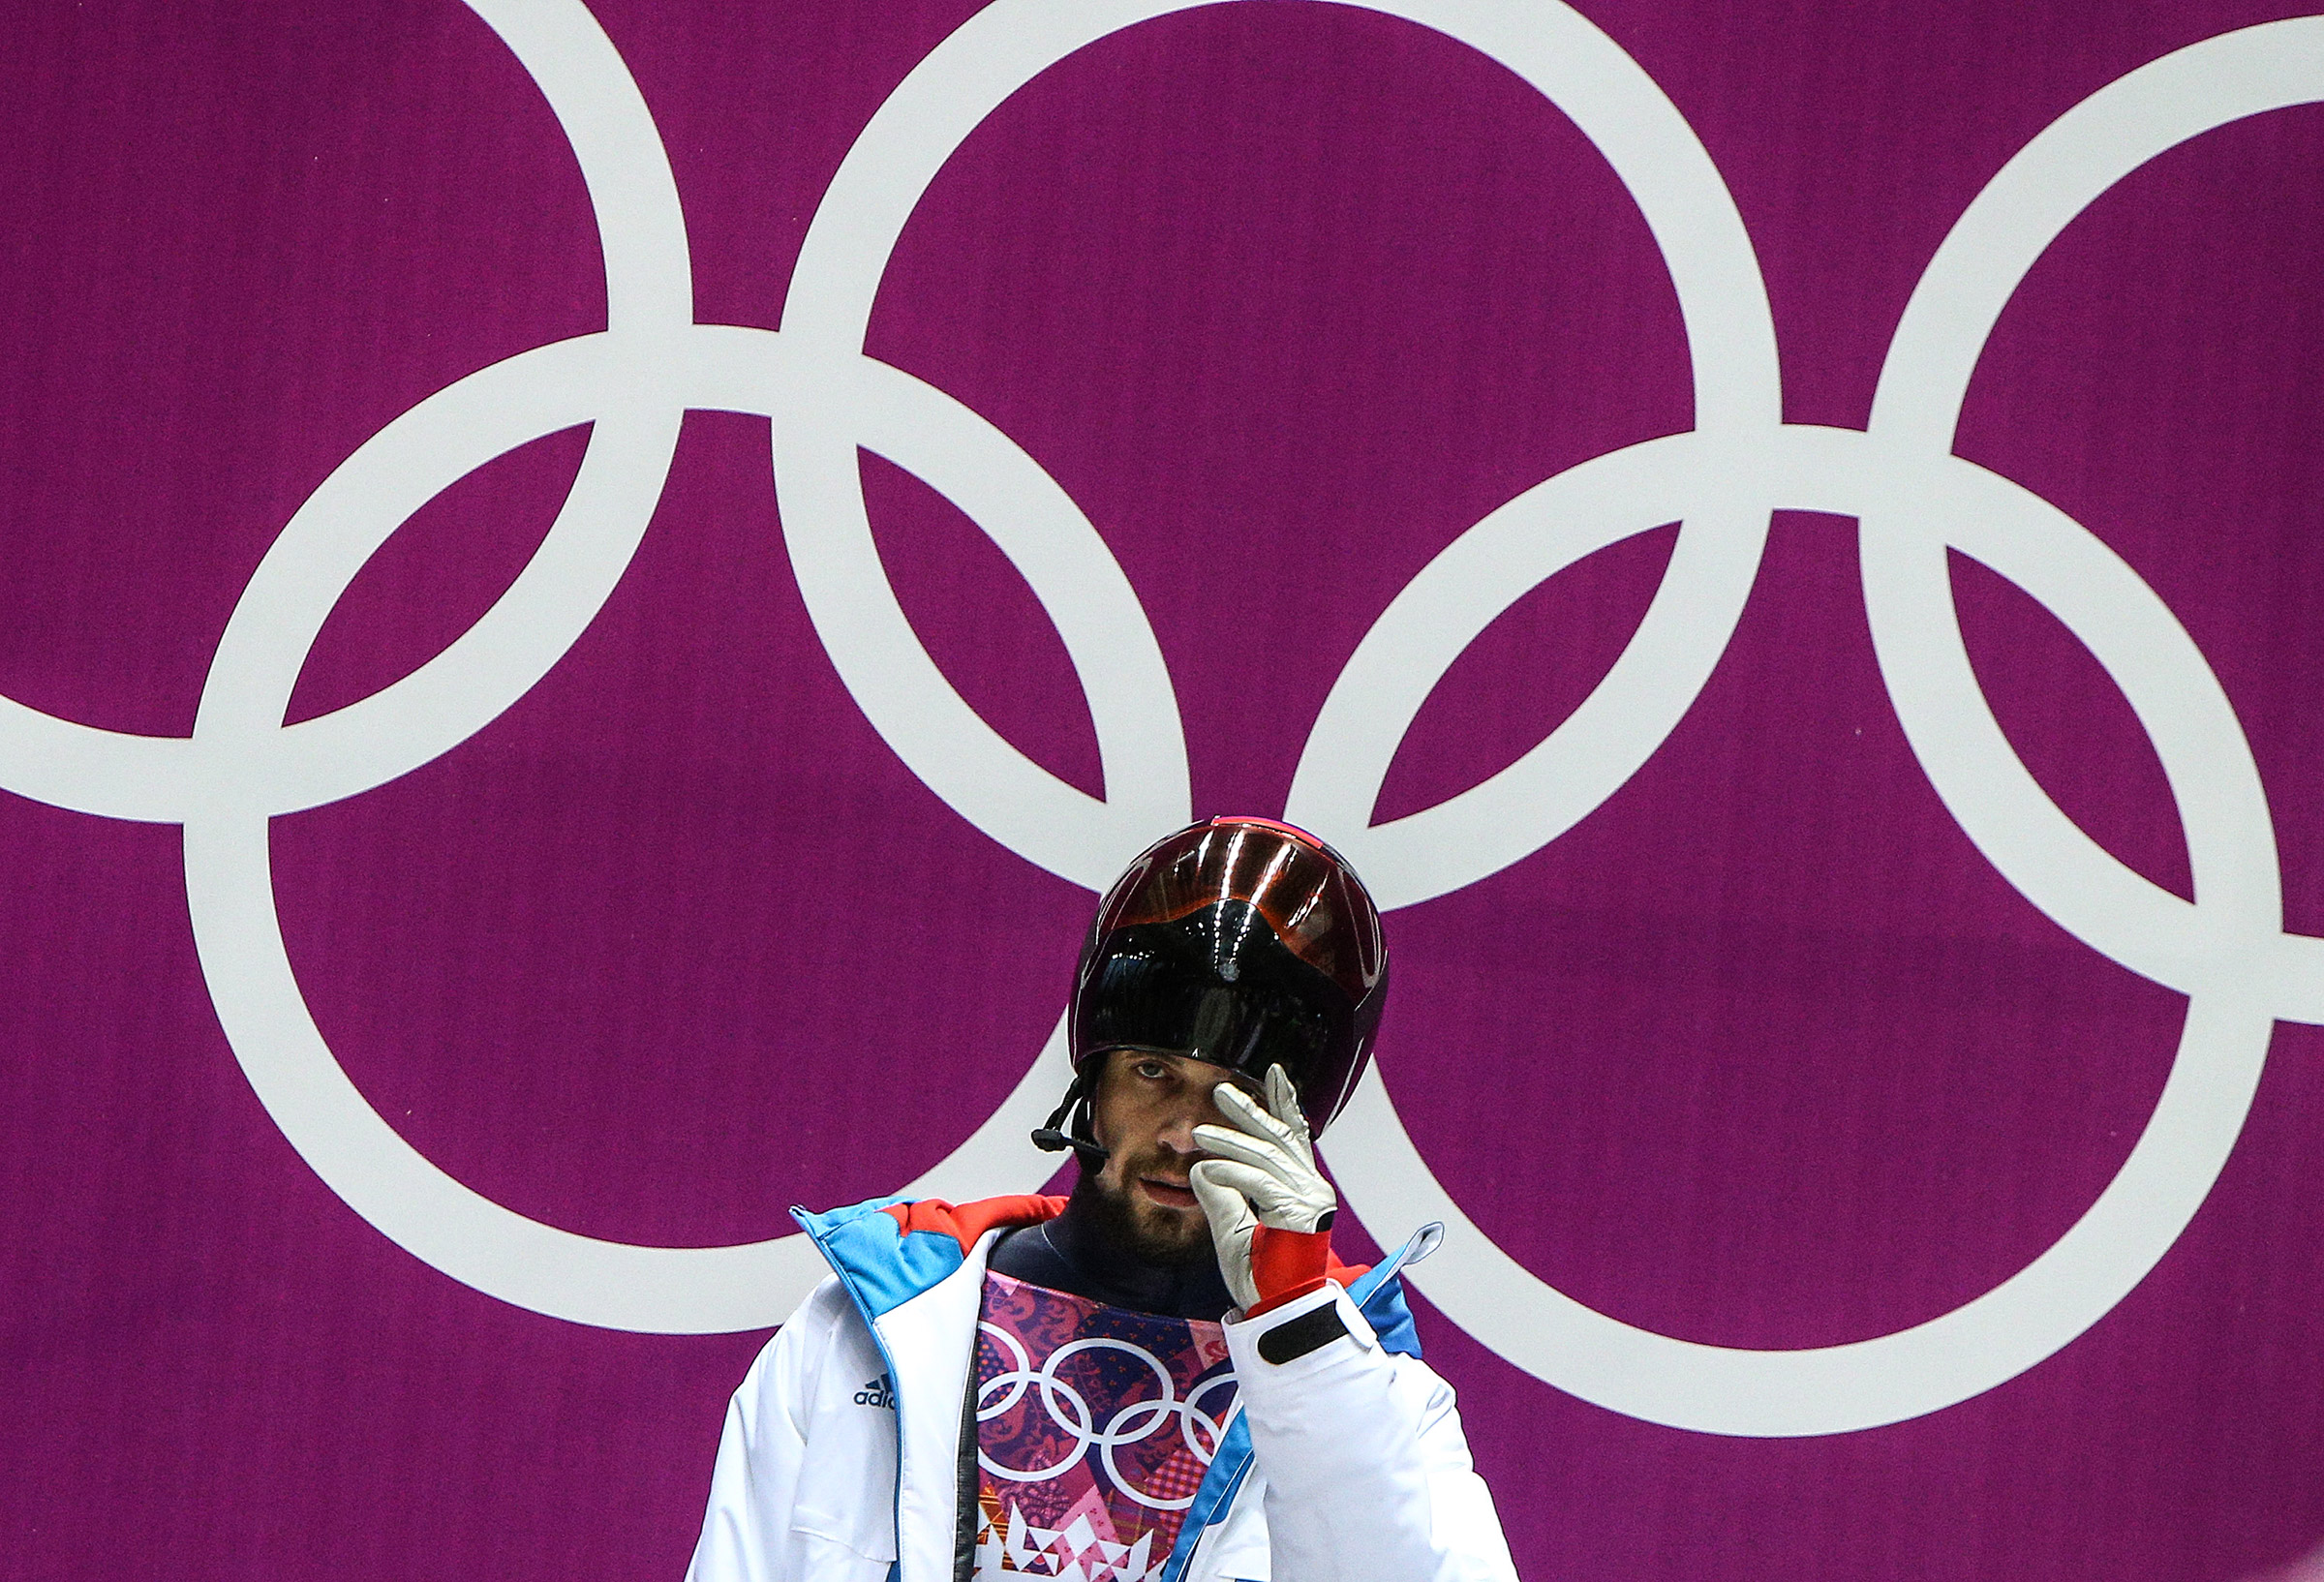 Звания чемпиона Олимпийских Игр в Сочи по скелетону лишился Александр Третьяков. Также он был ​временно отстранен от соревнований Международной федерацией бобслея и скелетона (IBSF).